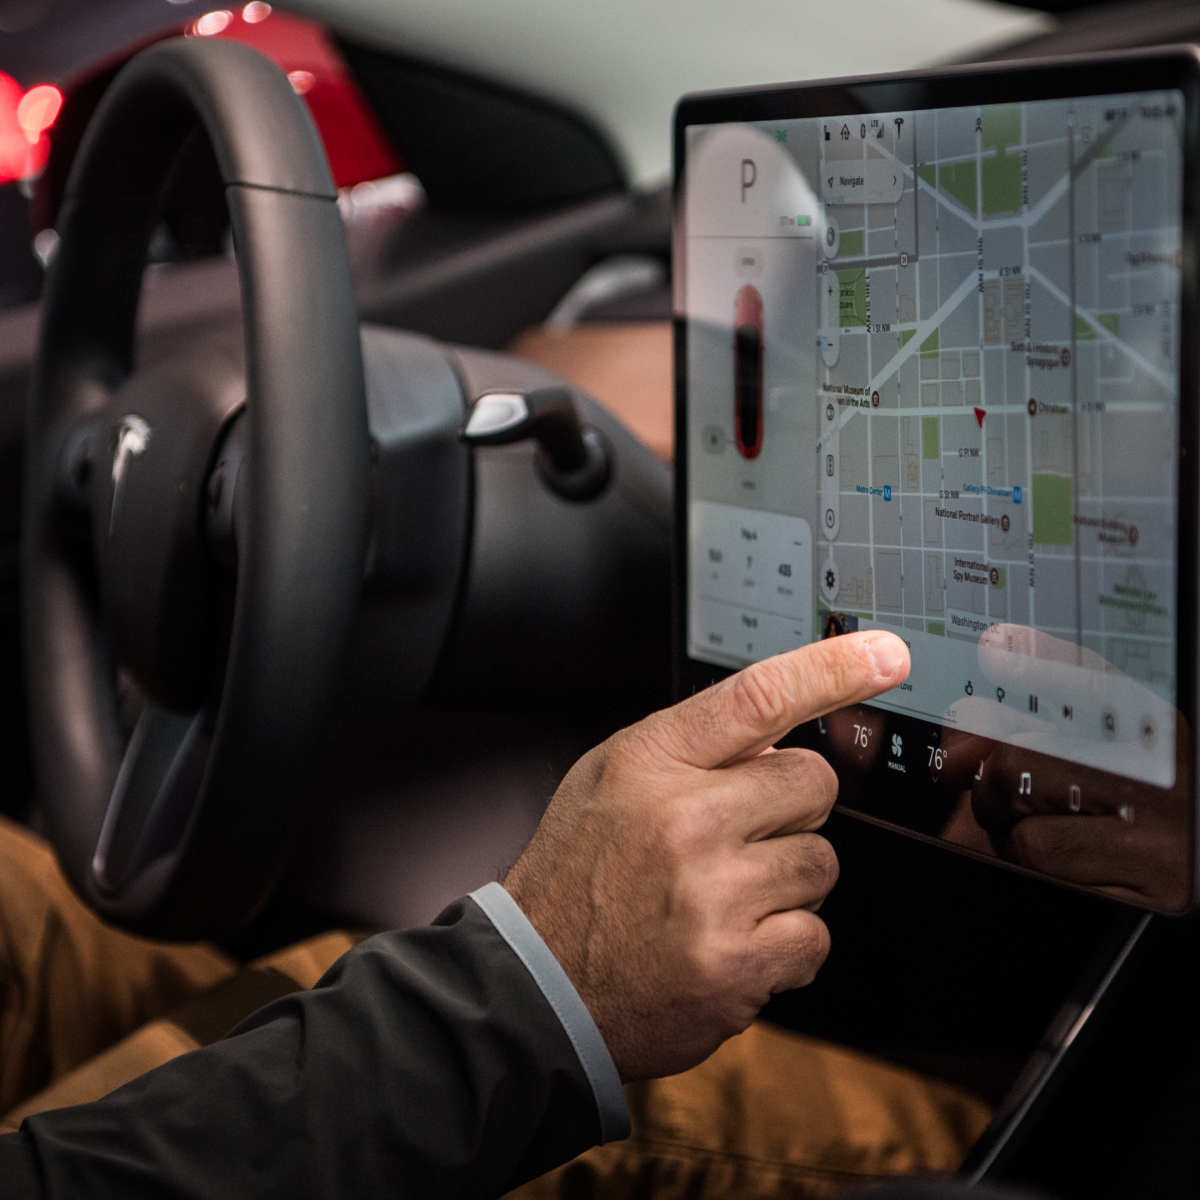 شركة تسلا قررت توقيف خاصية الألعاب الإلكترونية في السيارة في أثناء القيادة